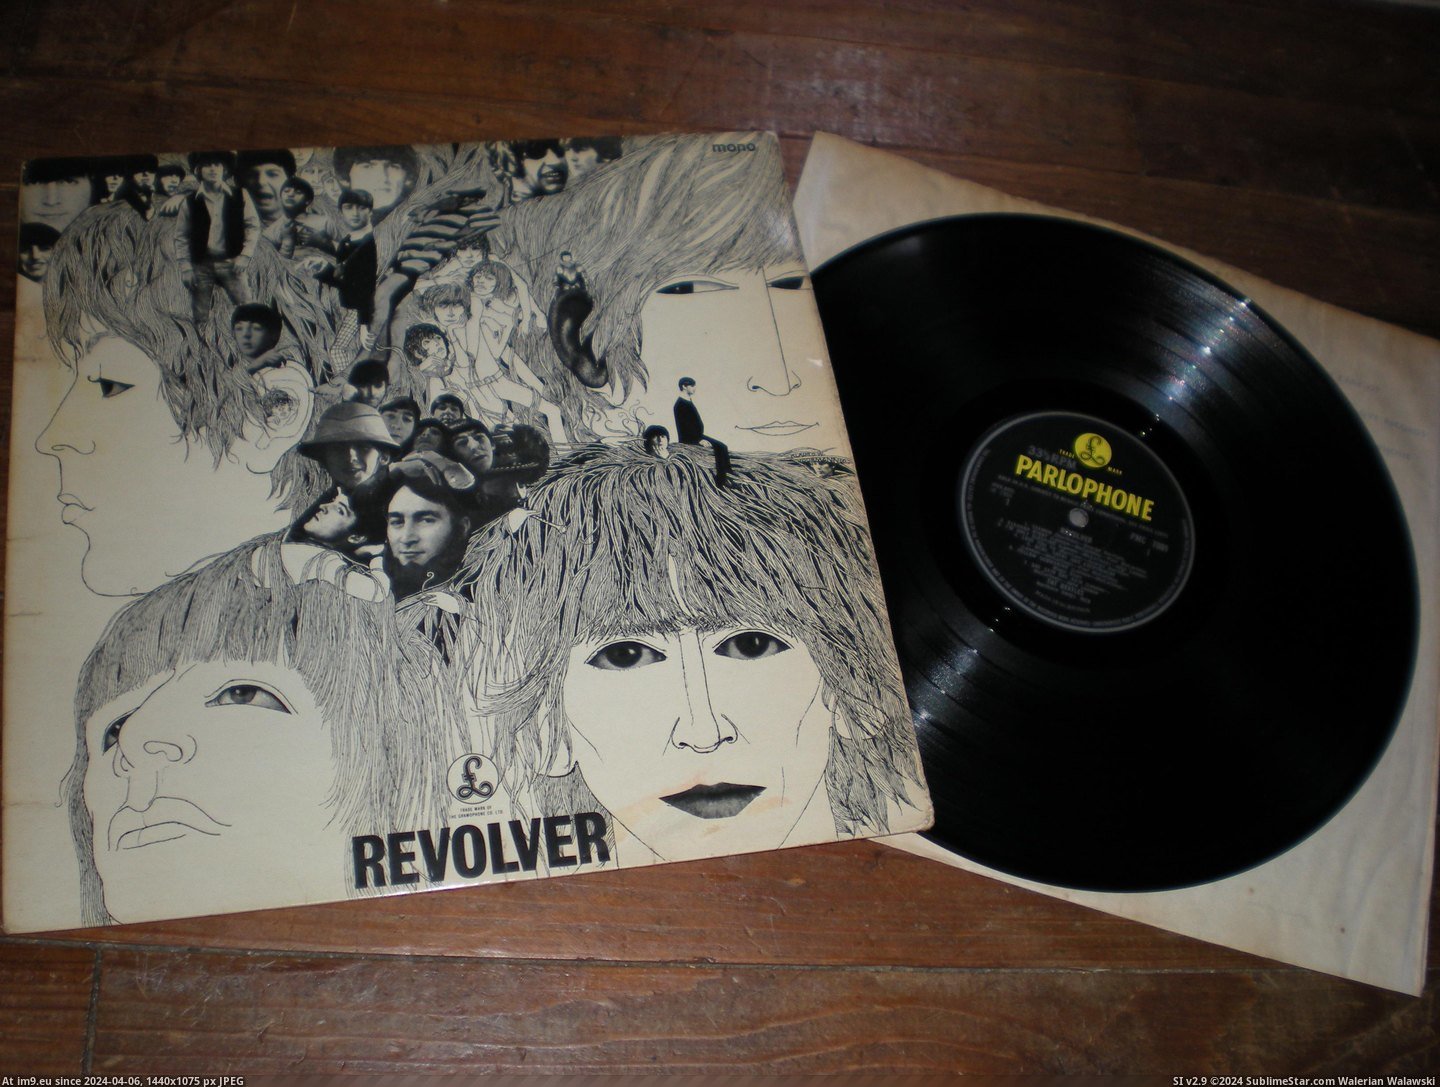  #Revolver  Revolver Mix 11 2 Pic. (Изображение из альбом new 1))